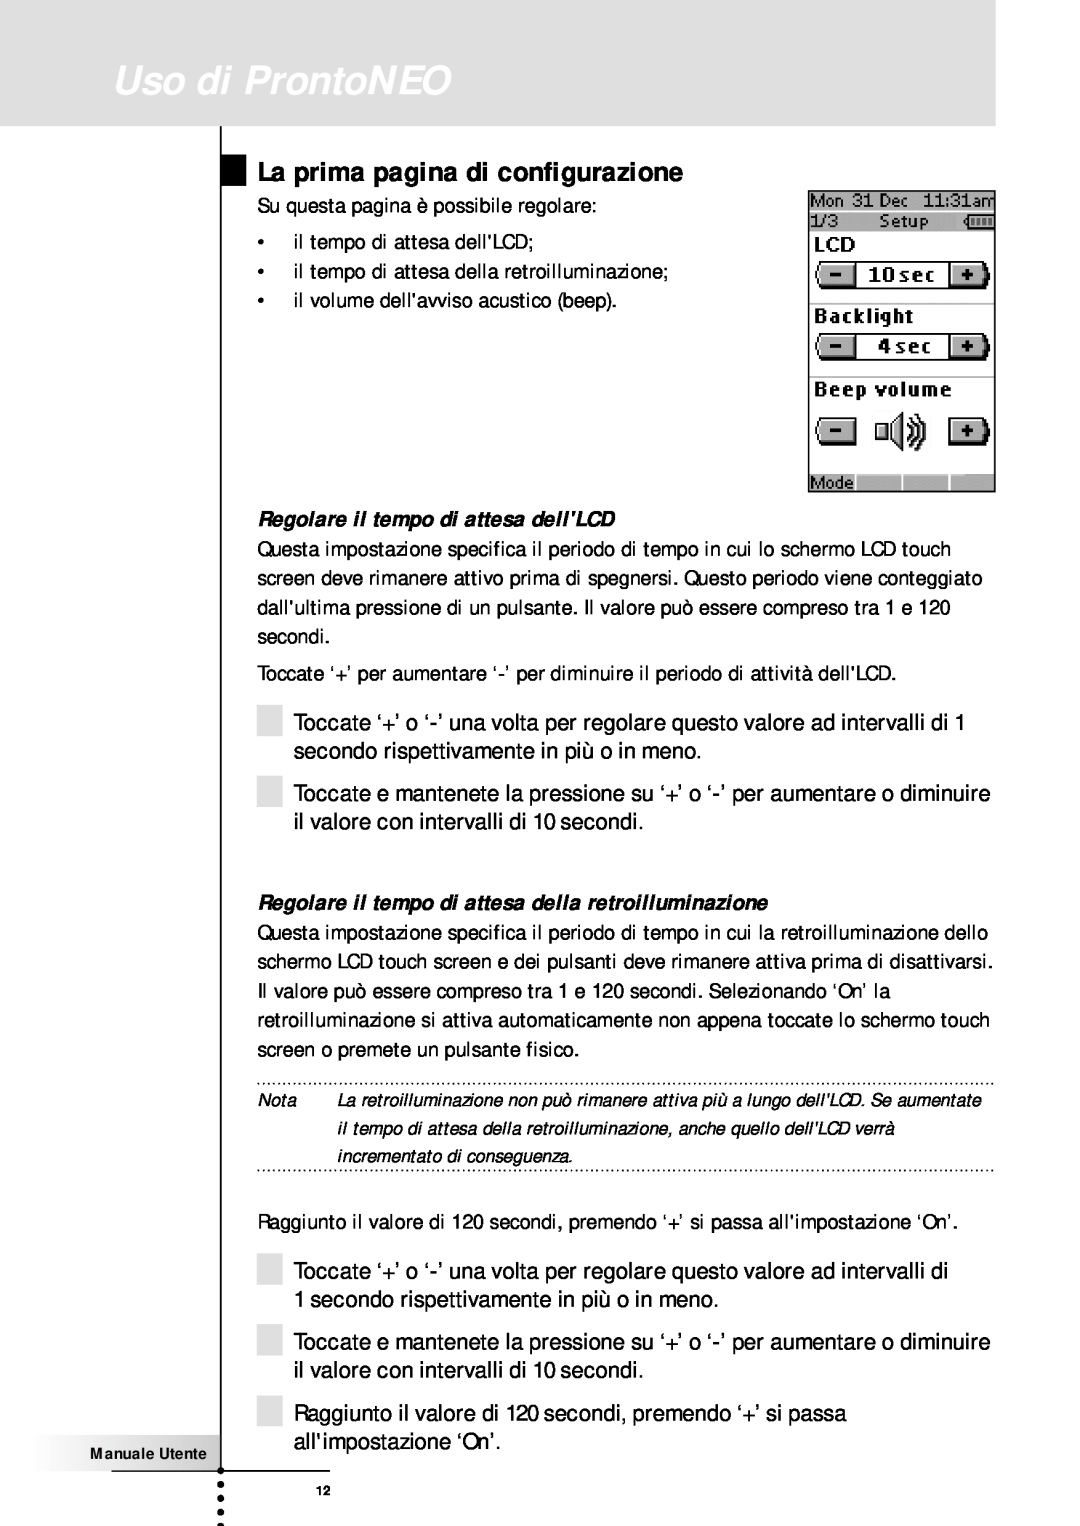 Memorex SBC RU 930 manual Uso di ProntoNEO, La prima pagina di configurazione, Regolare il tempo di attesa dellLCD 